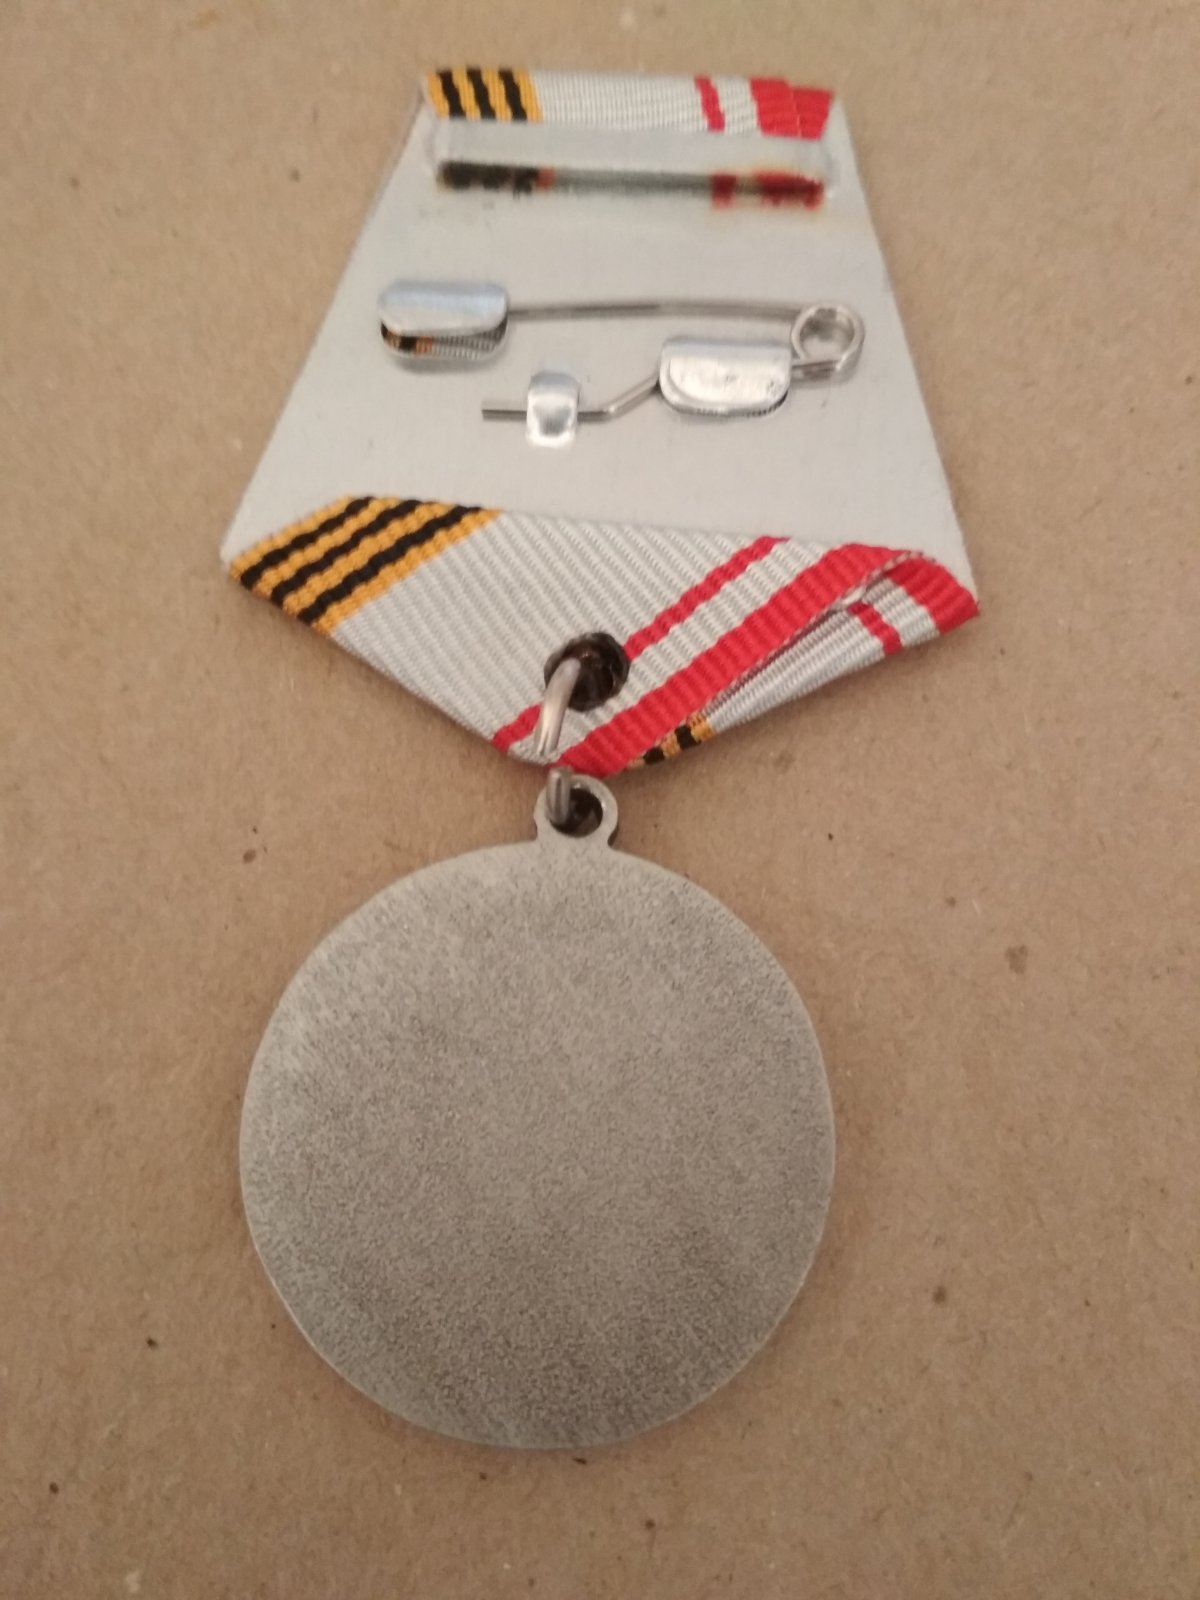 Памятная медаль "Ветеран вооруженных сил СССР"